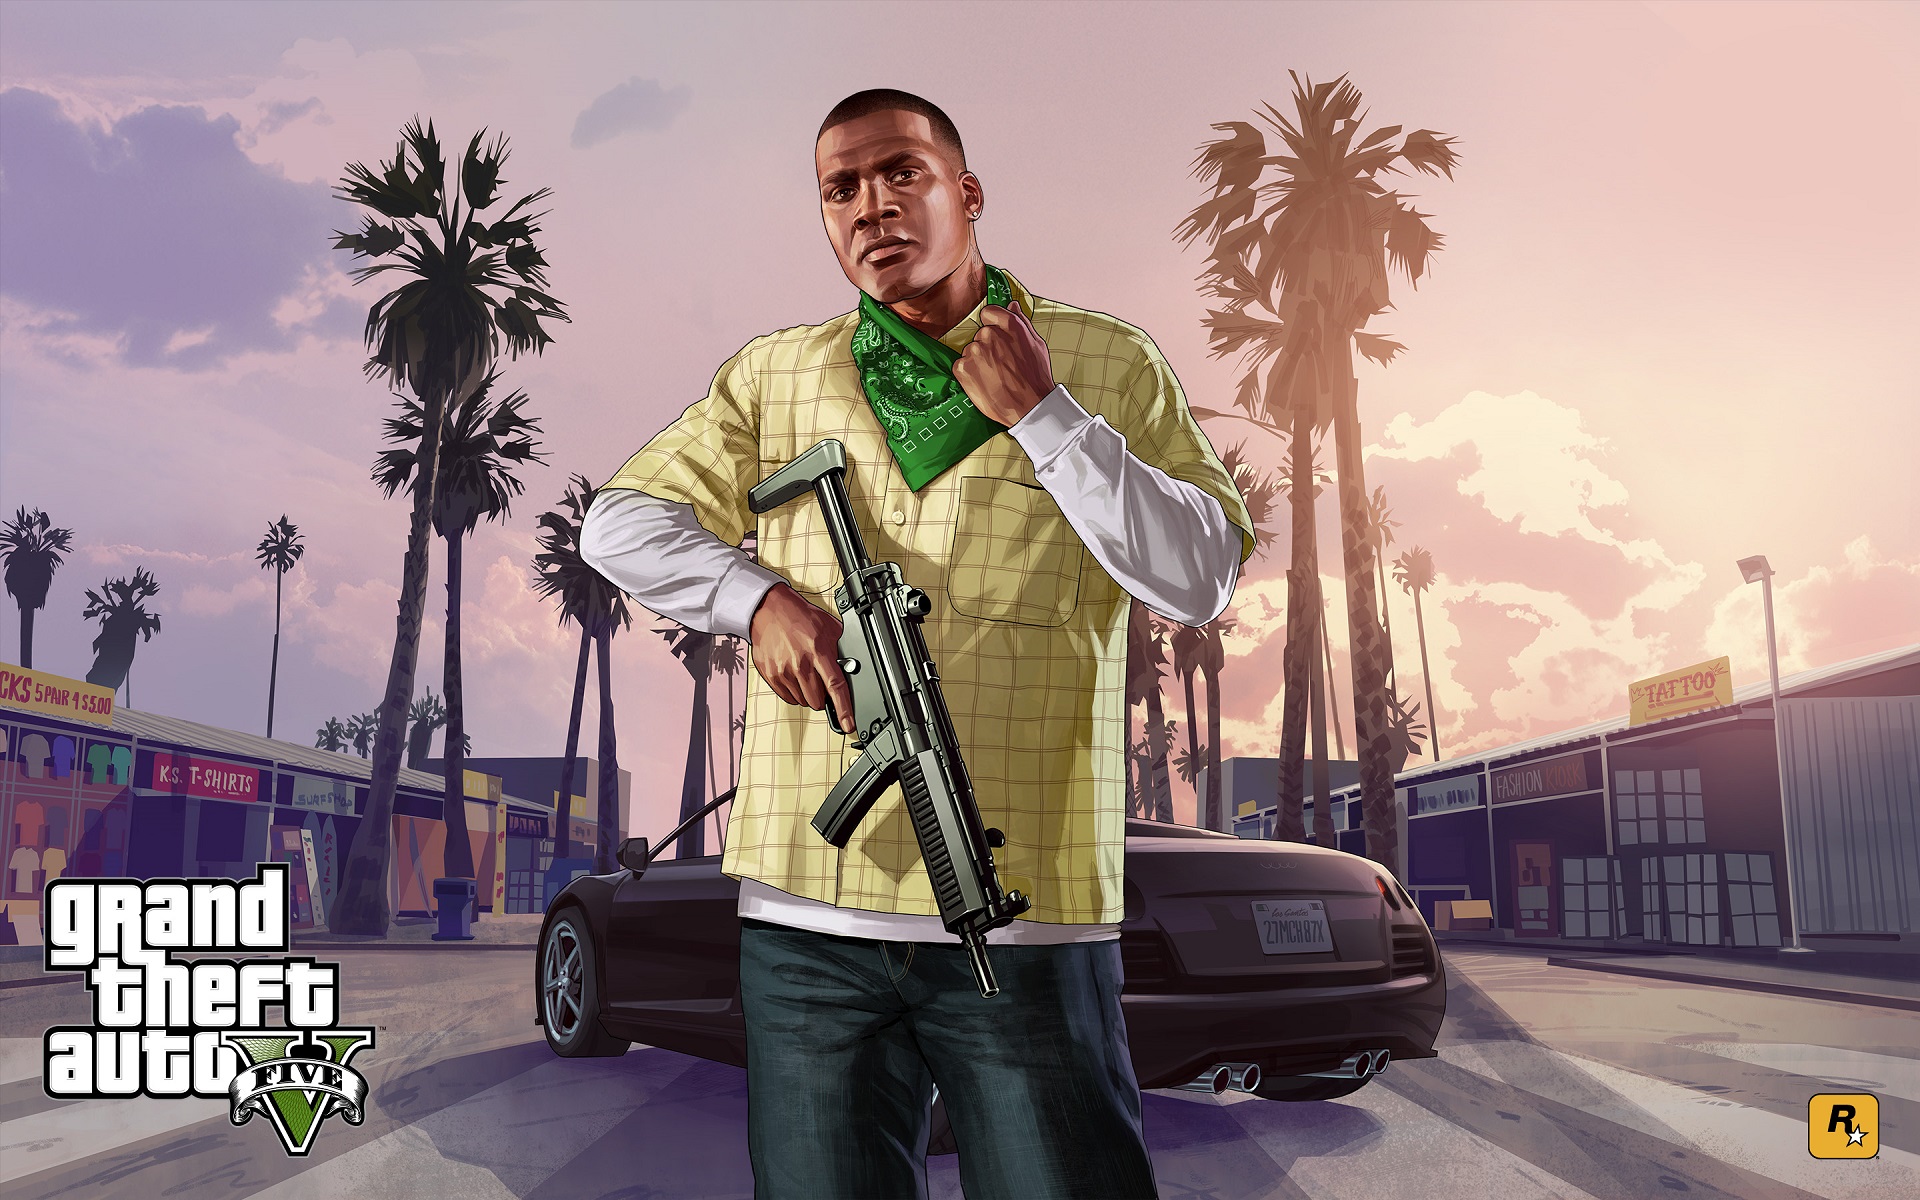 Fondos de pantalla de GTA 5, Wallpapers Grand Theft Auto V Gratis